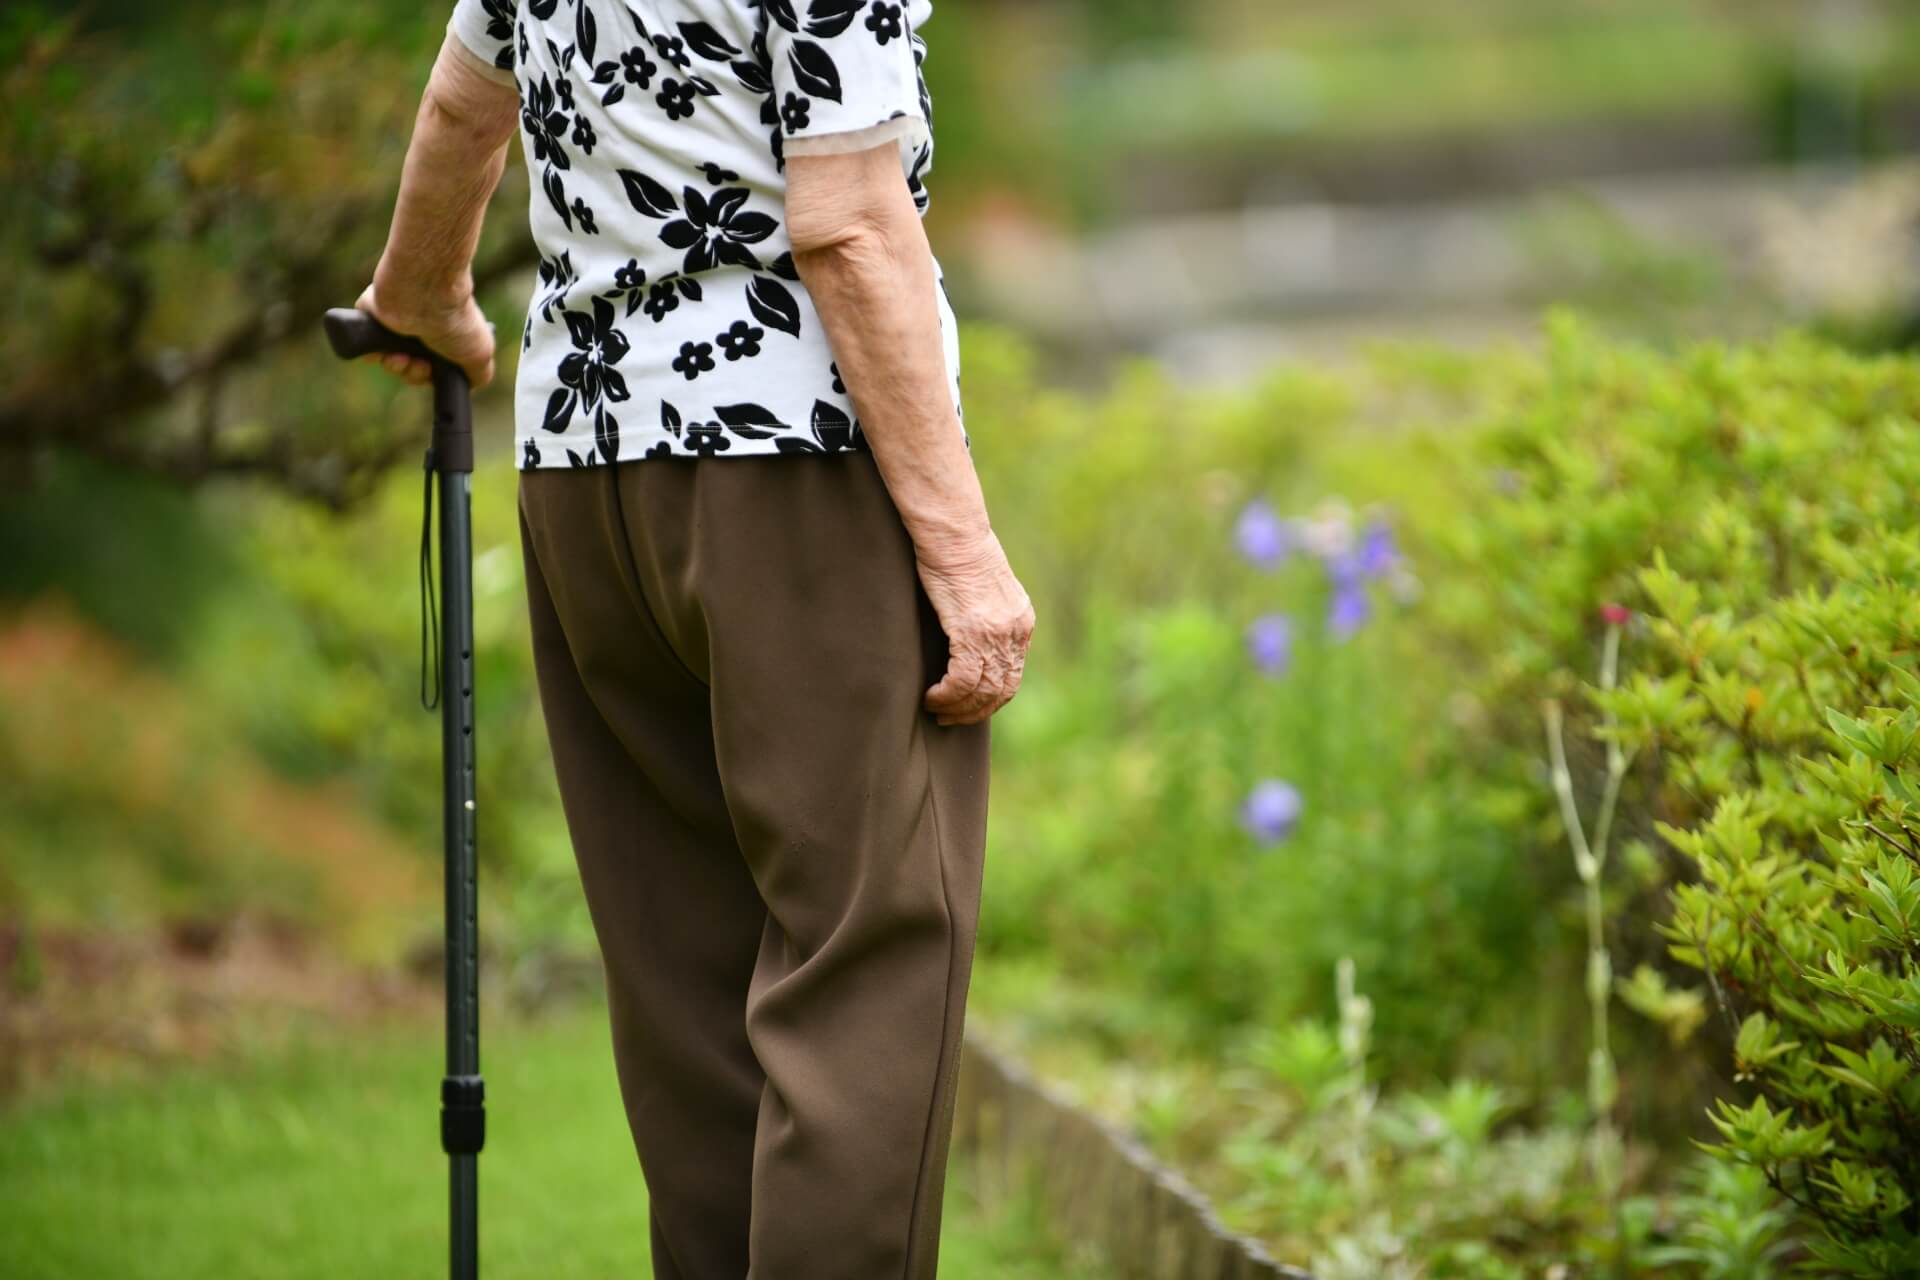 ご高齢の女性が、杖をつきながら緑豊かな自然の中で散歩している写真